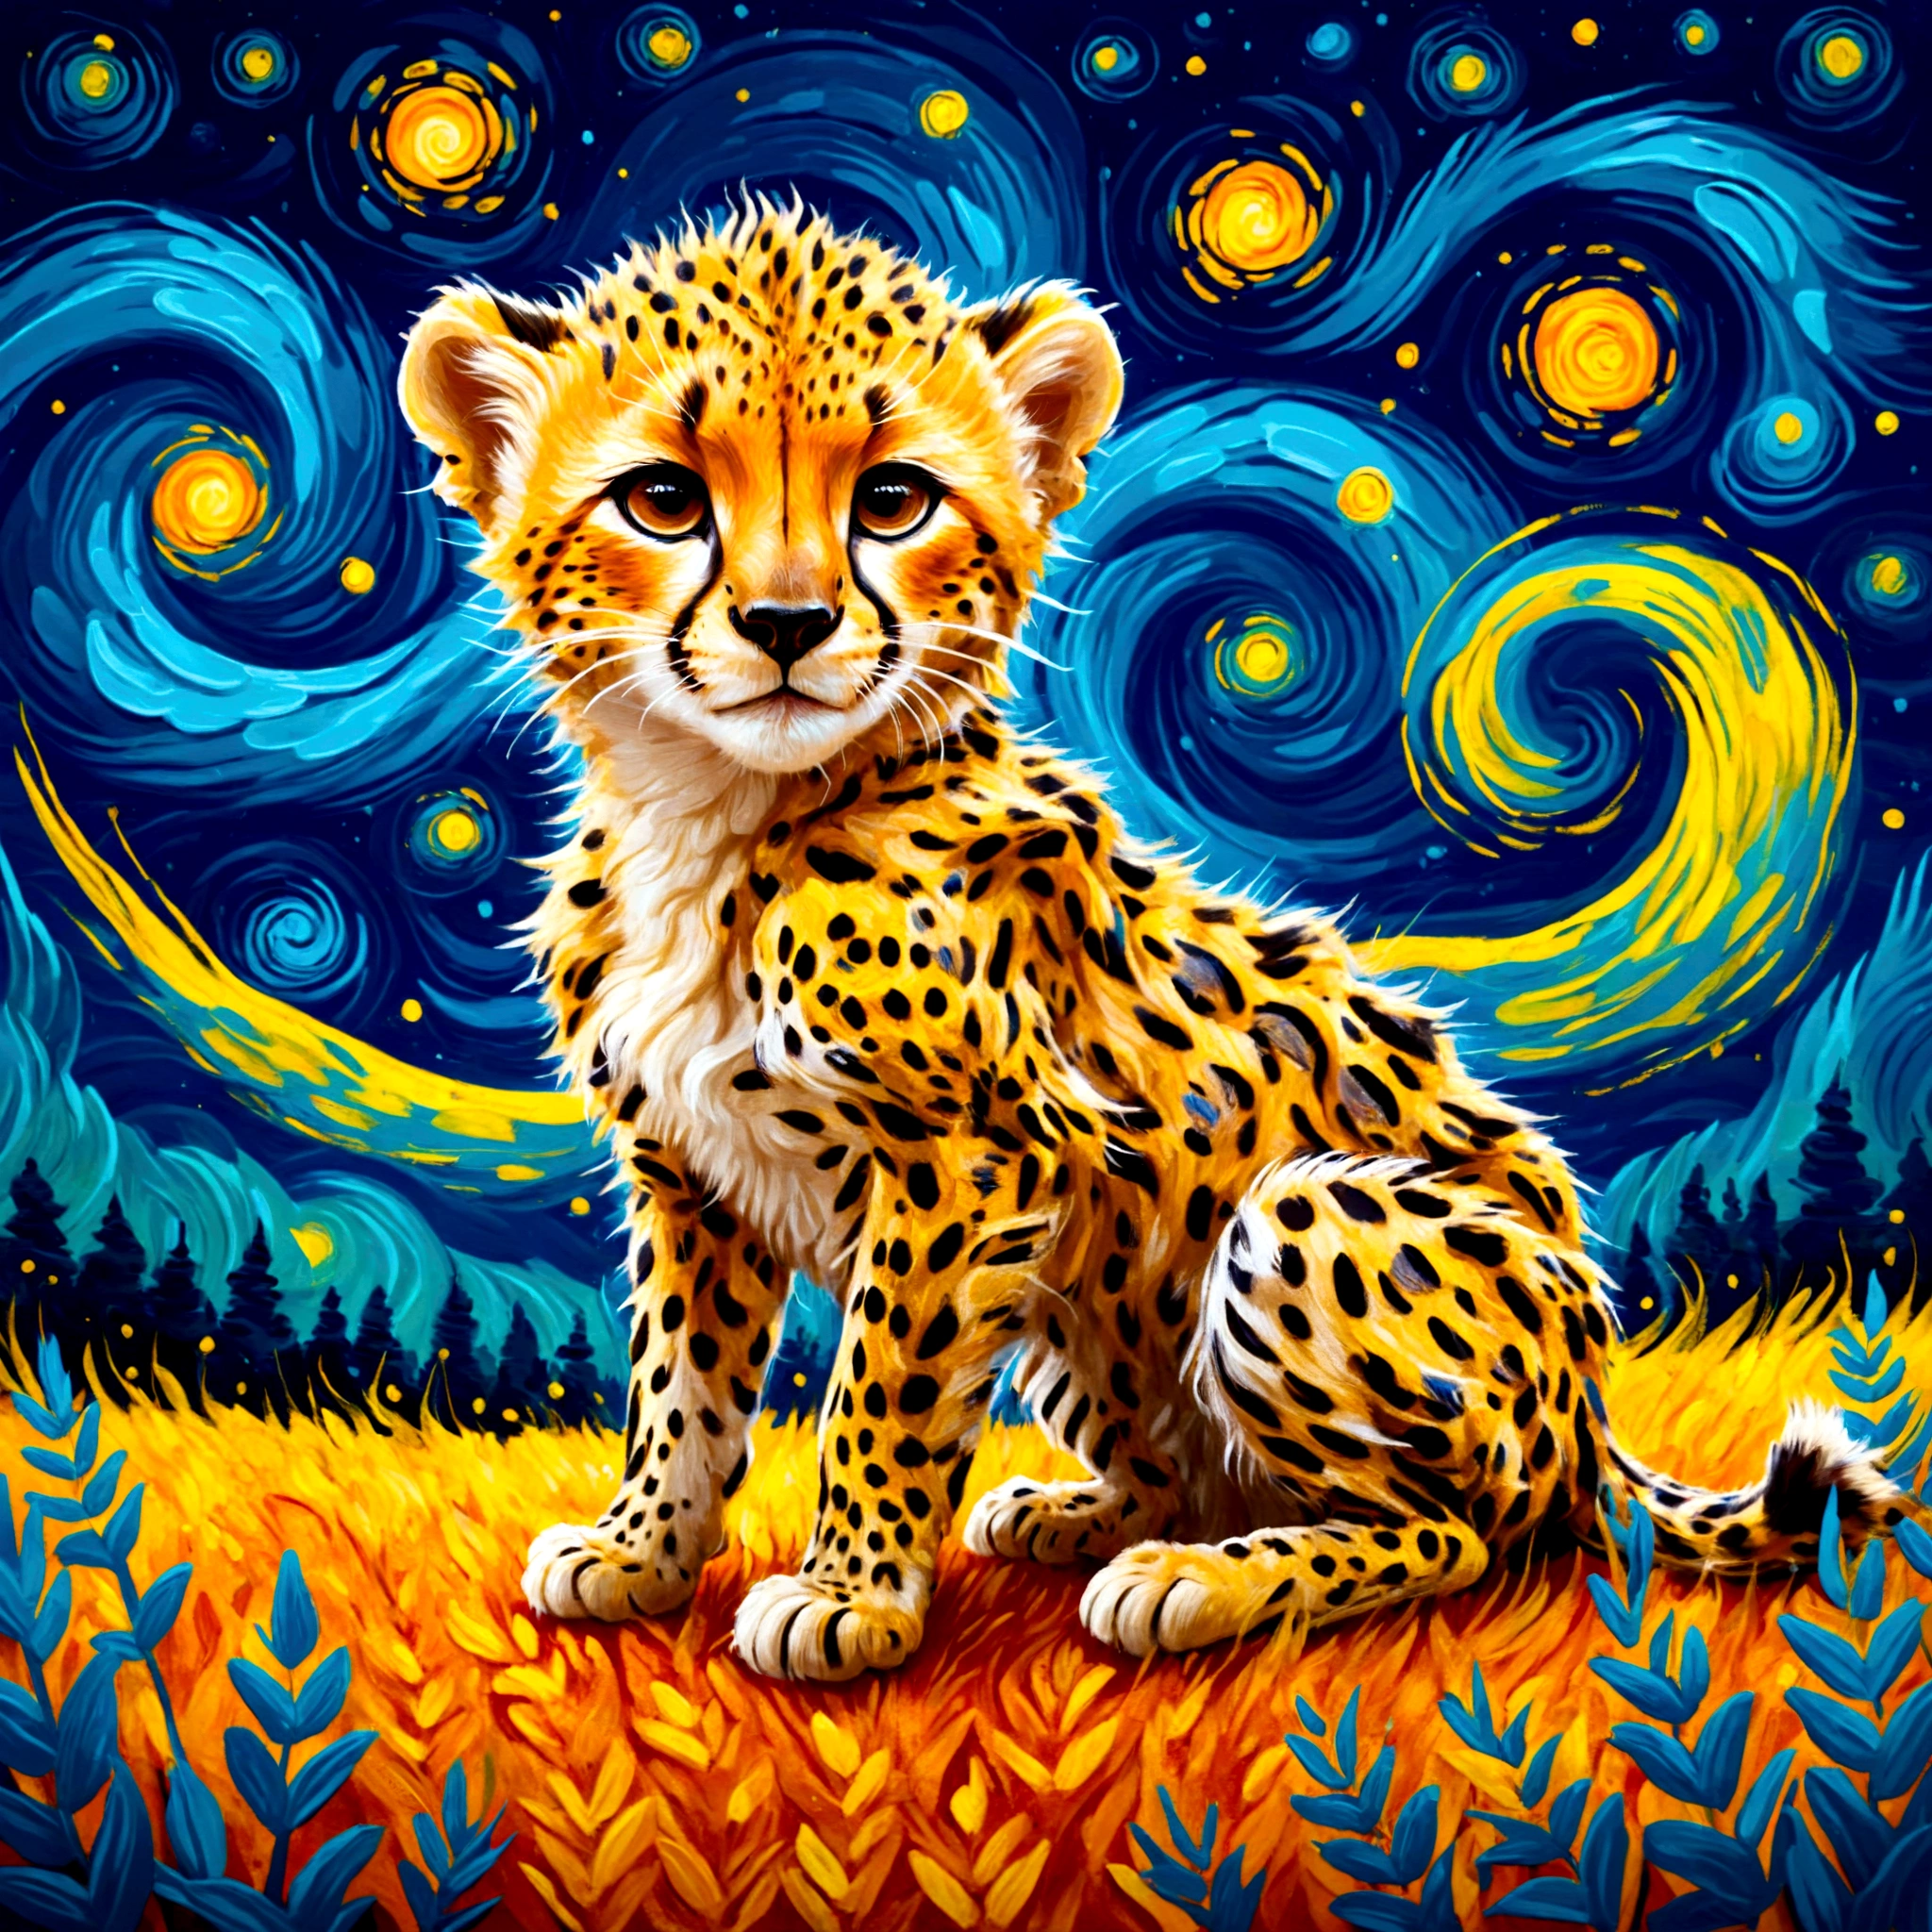 梵谷風格的獵豹幼崽的程式化插圖, 帶有旋轉的筆觸和鮮豔的色彩, 
鮮明的對比, 輕柔的觸感渲染, 準確的細節, 高細節, 閃亮的輪廓, 精確, 高质量, 令人驚嘆的美麗觸控渲染, 幻想,